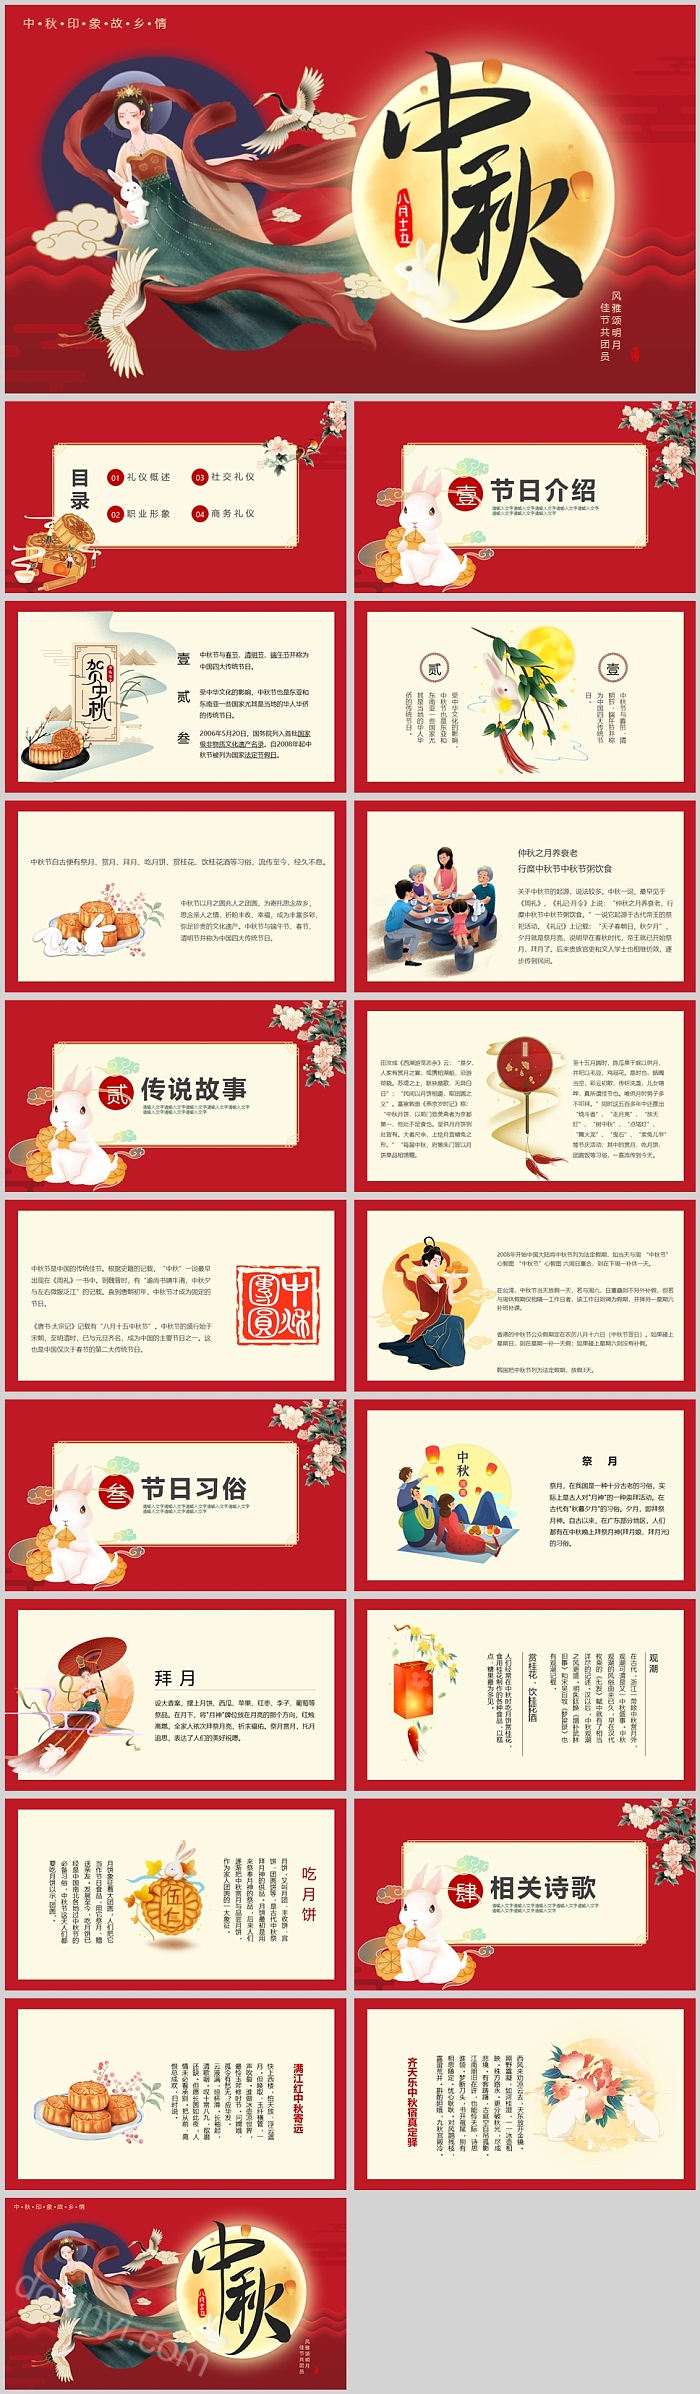 中国印象八月十五中秋节PPT模板